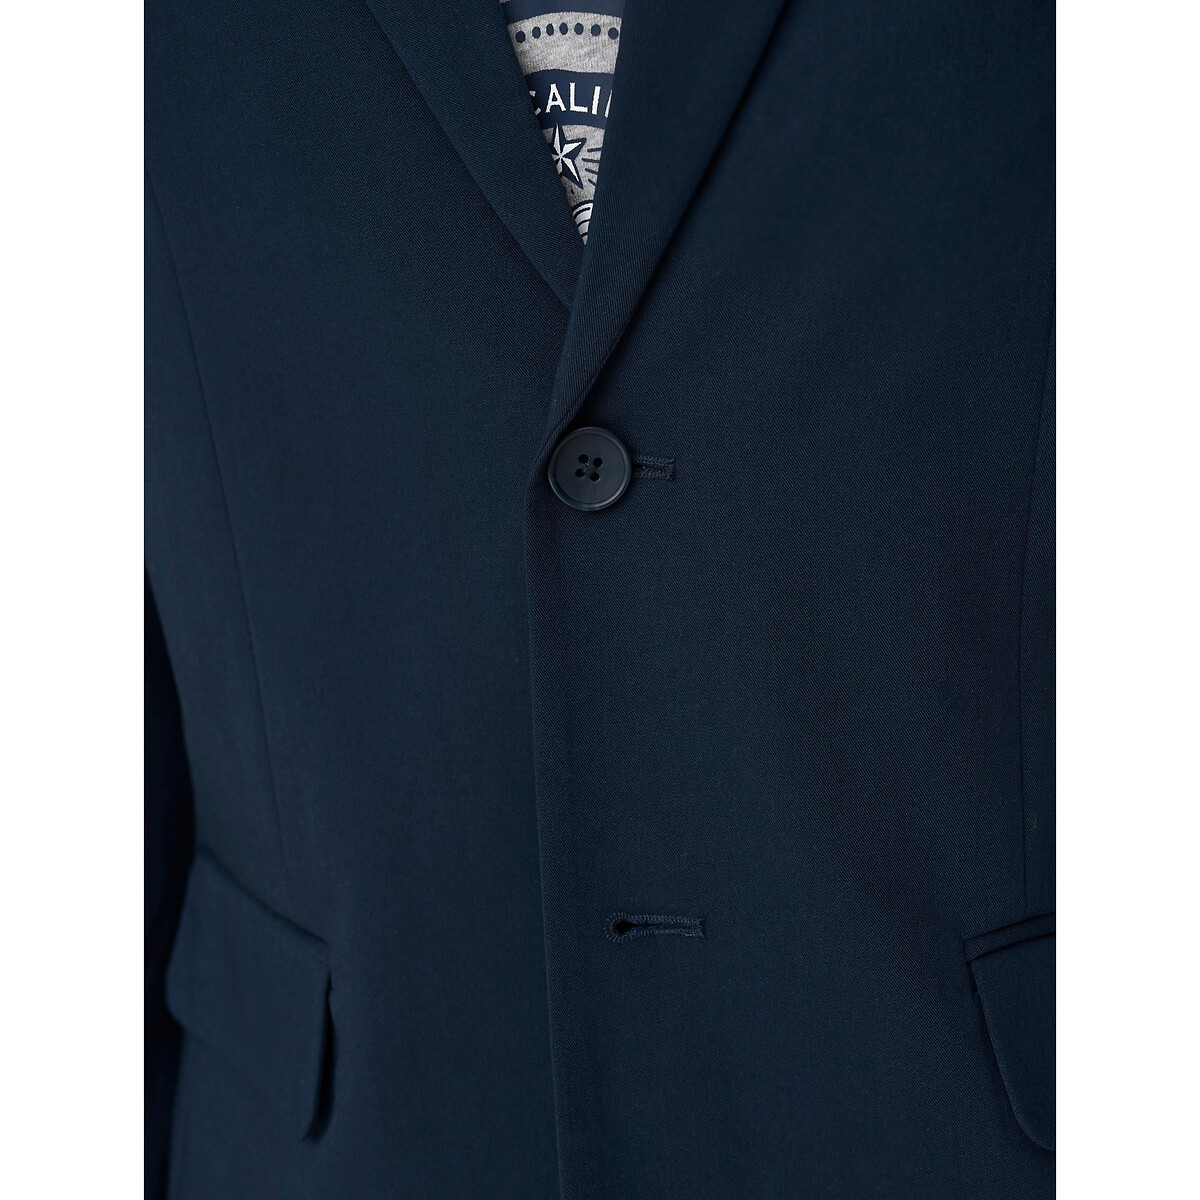 Пиджак Приталенного покроя удлиненный 52 синий LaRedoute, размер 52 - фото 5